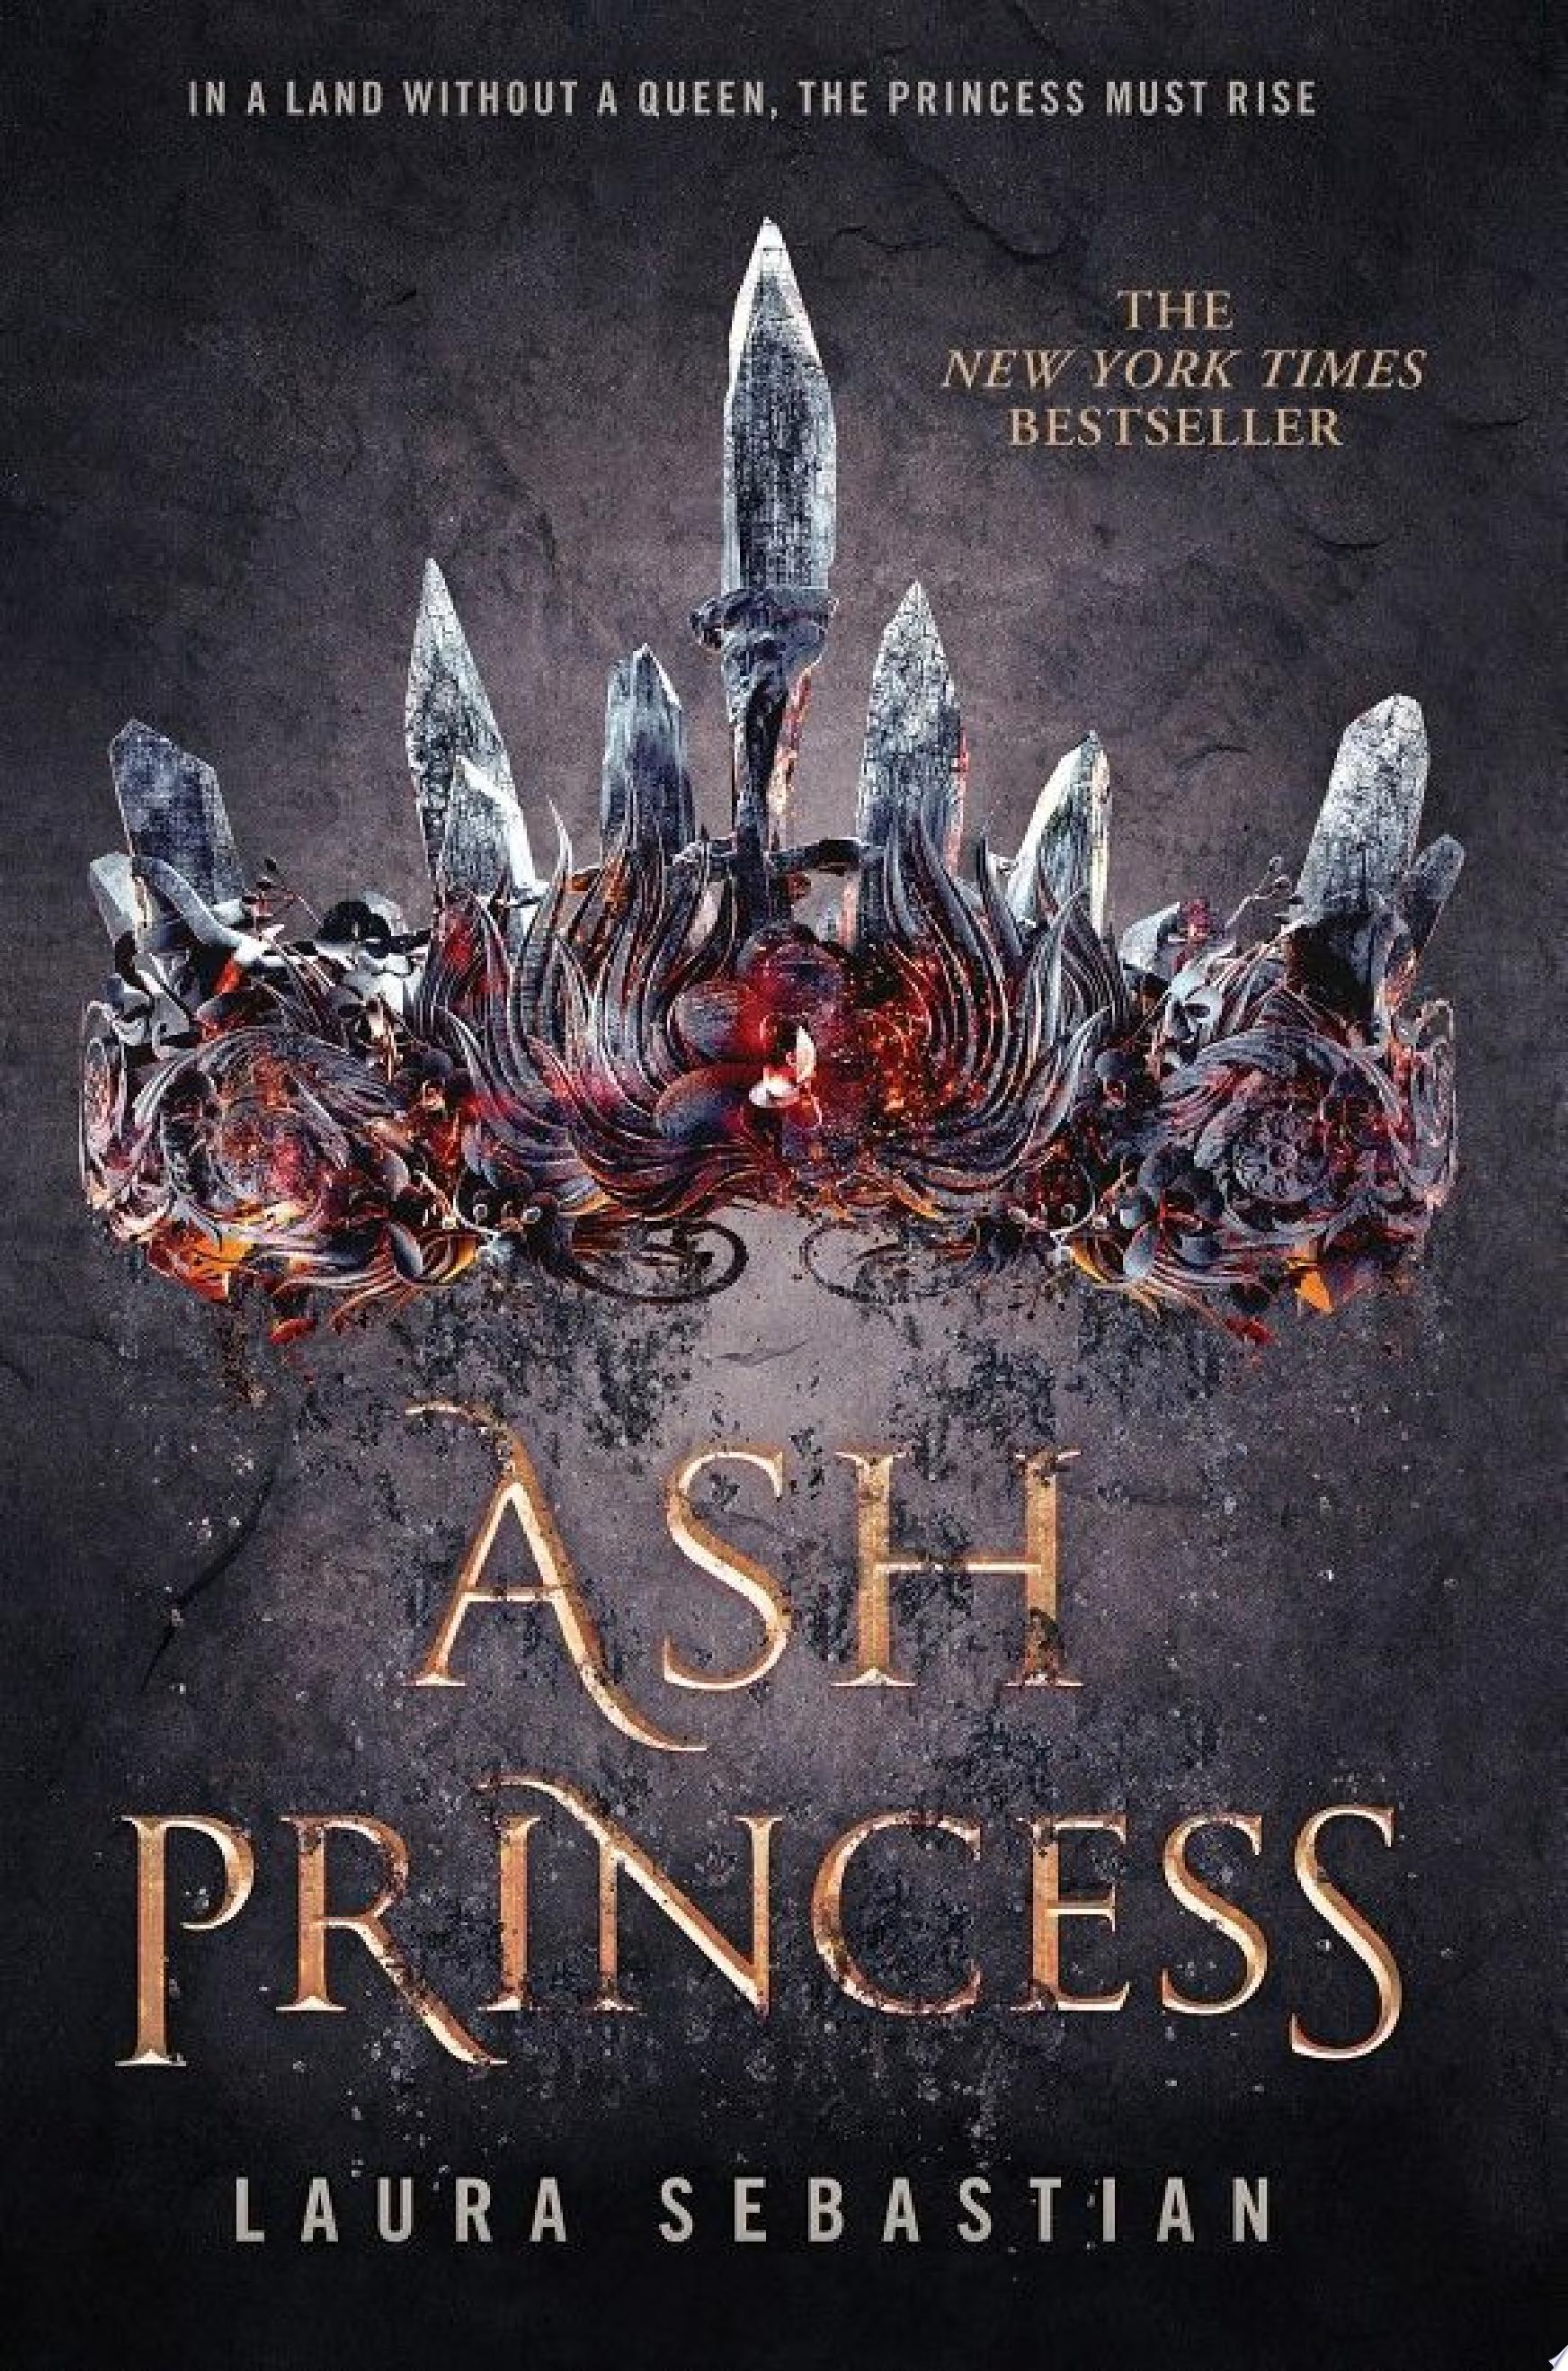 Image for "Ash Princess"